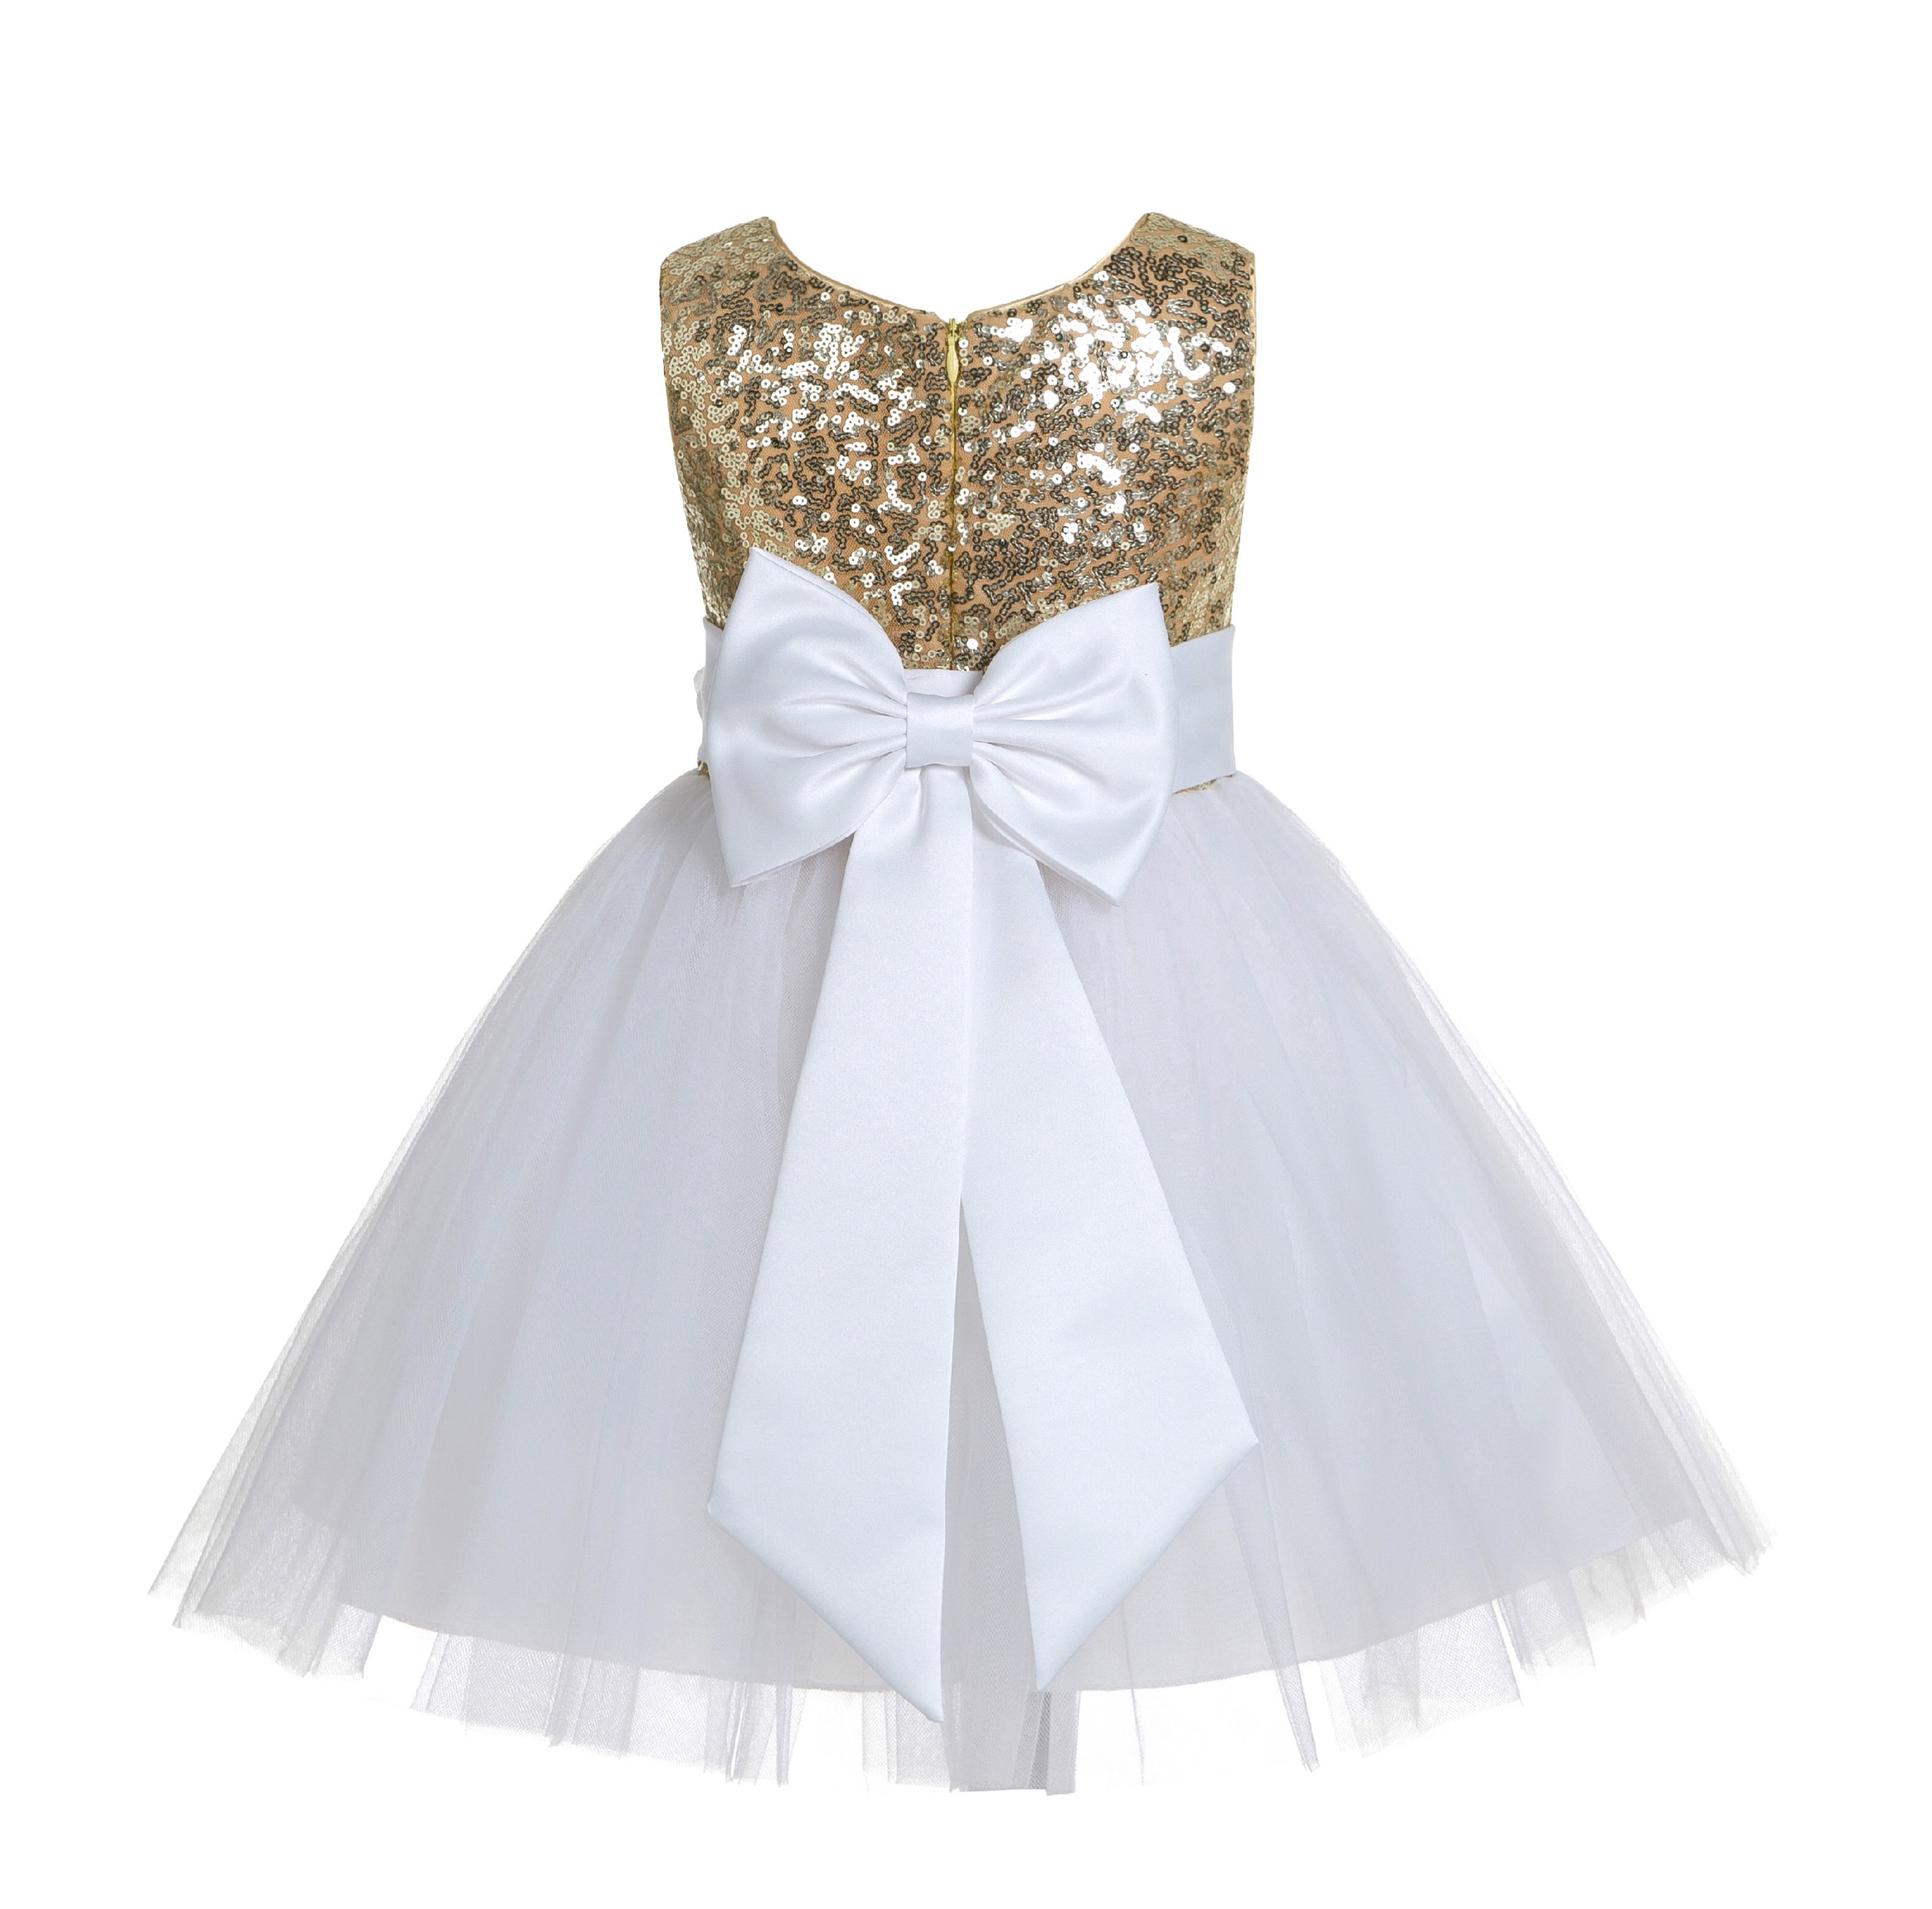 Gold/White/White Glitter Sequin Tulle Flower Girl Dress Toddler Dresses 123T